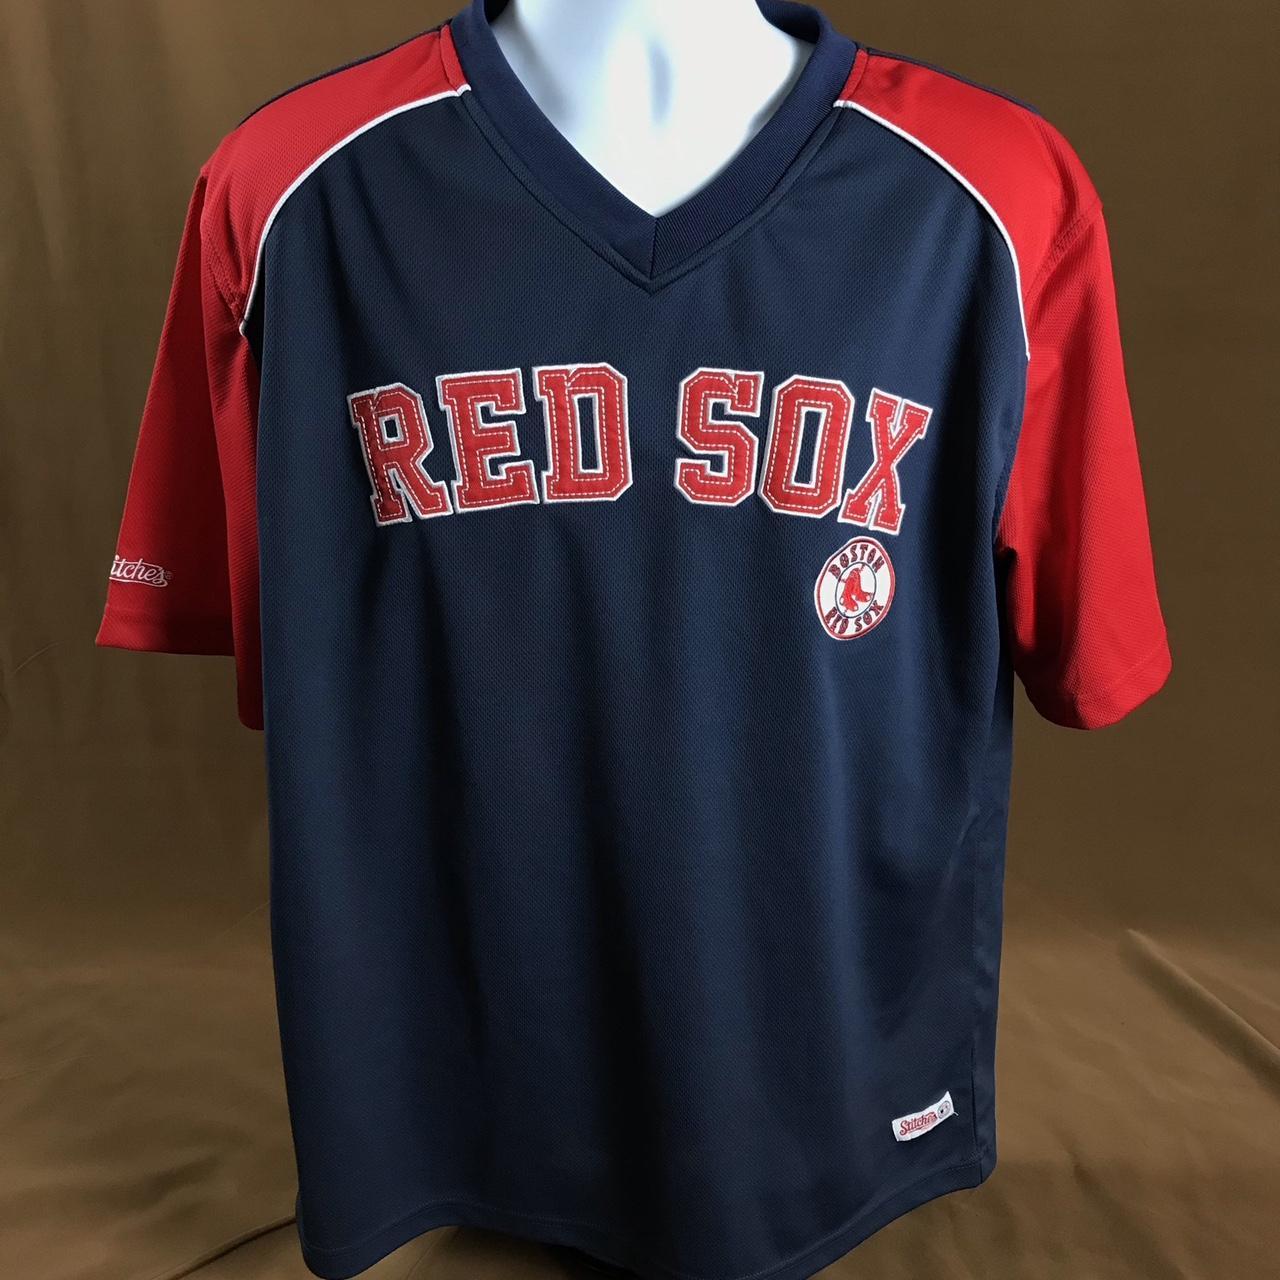 Red Sox Jersey - Depop